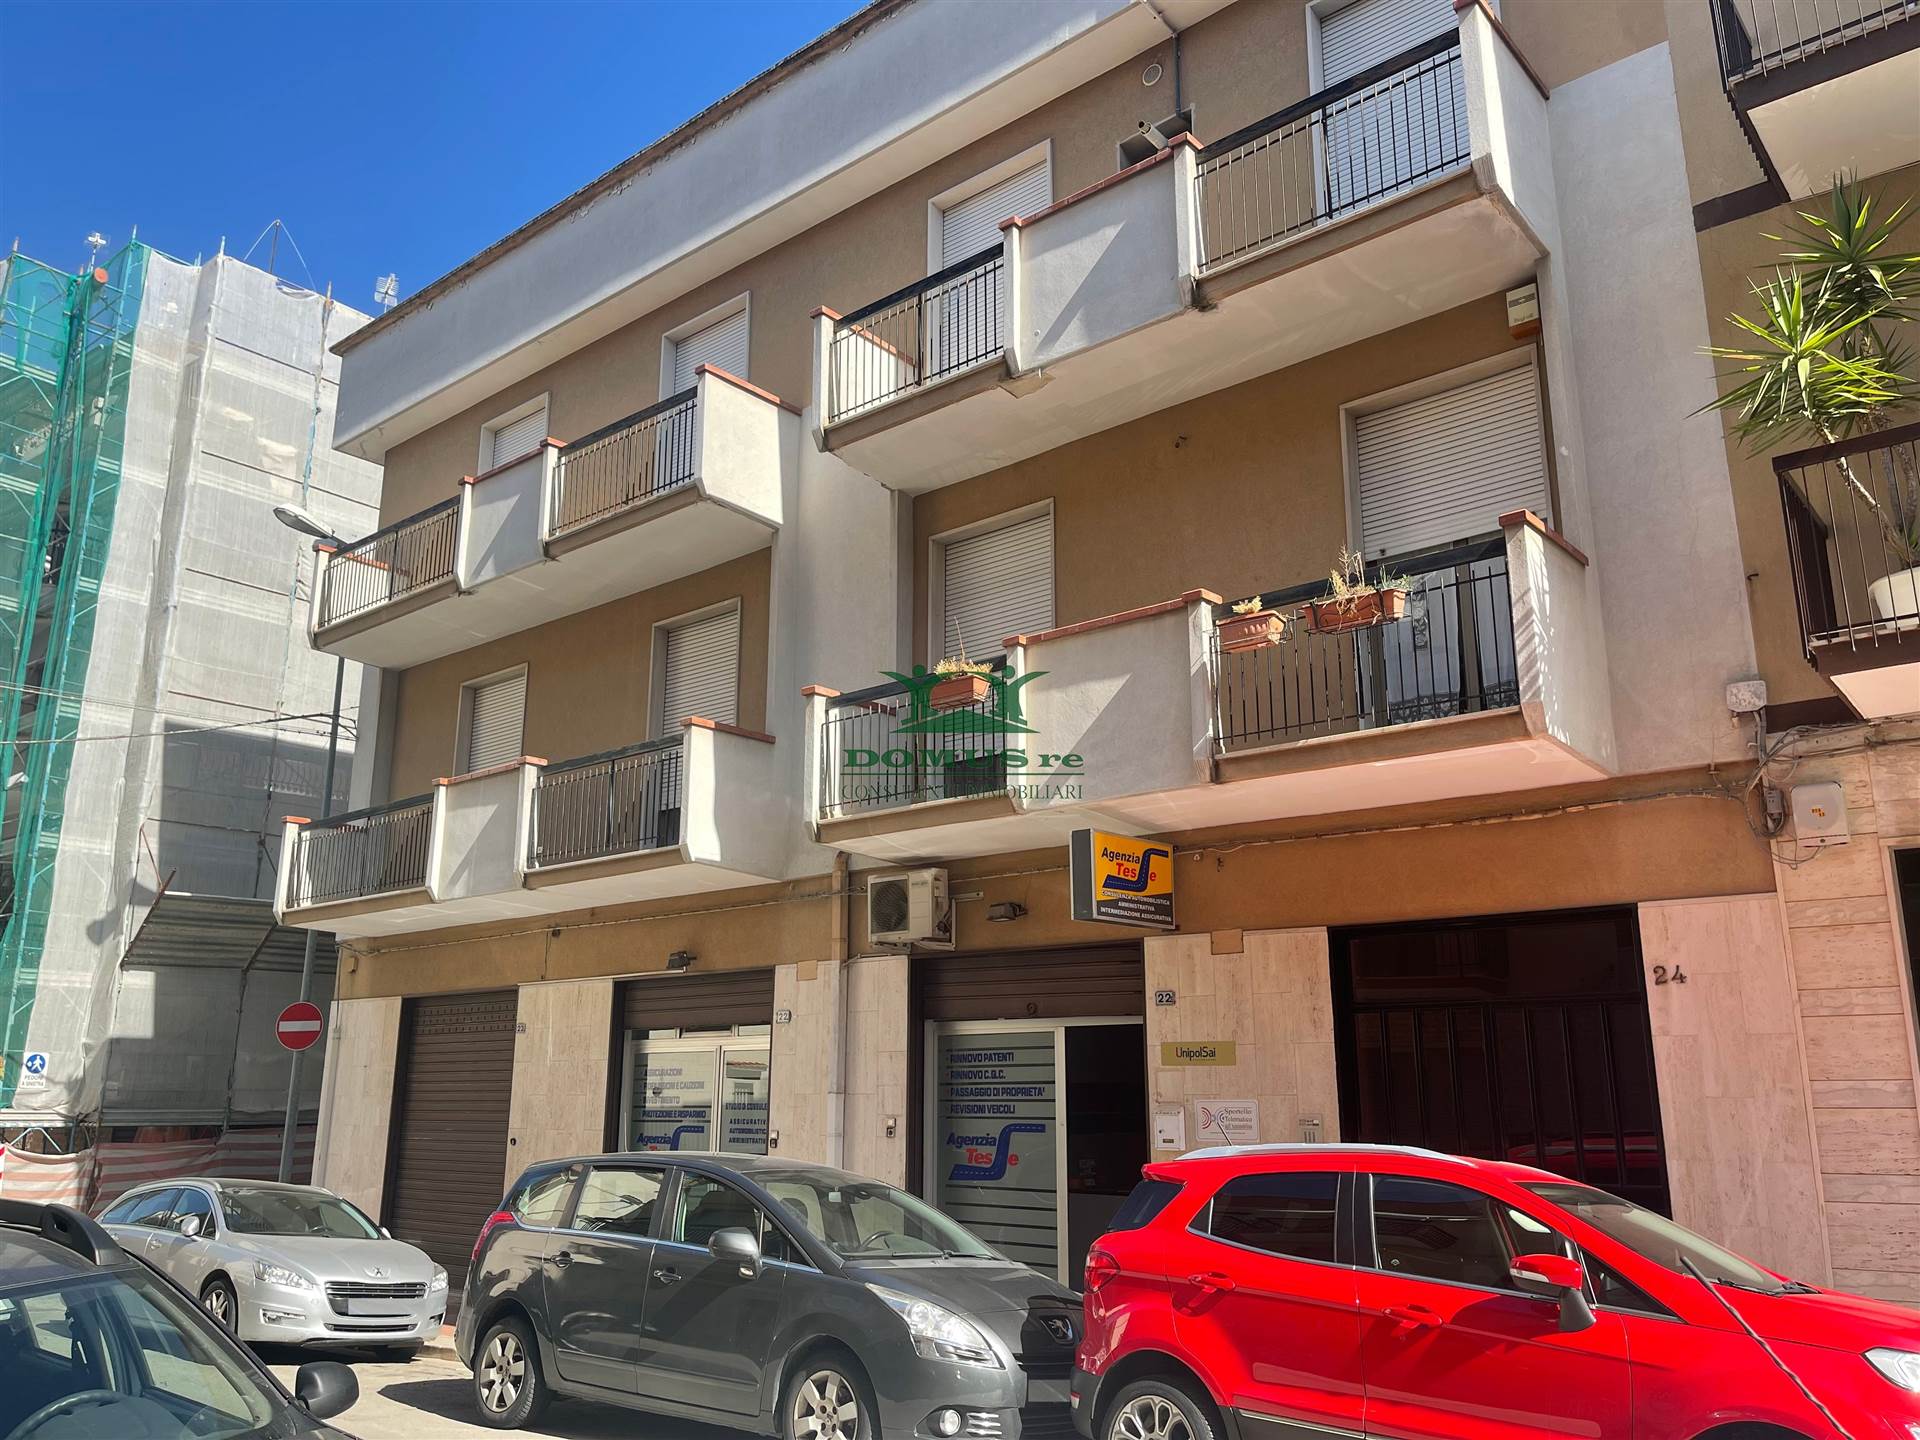 Appartamento in vendita a Andria, 3 locali, zona Località: STADIO, prezzo € 95.000 | PortaleAgenzieImmobiliari.it